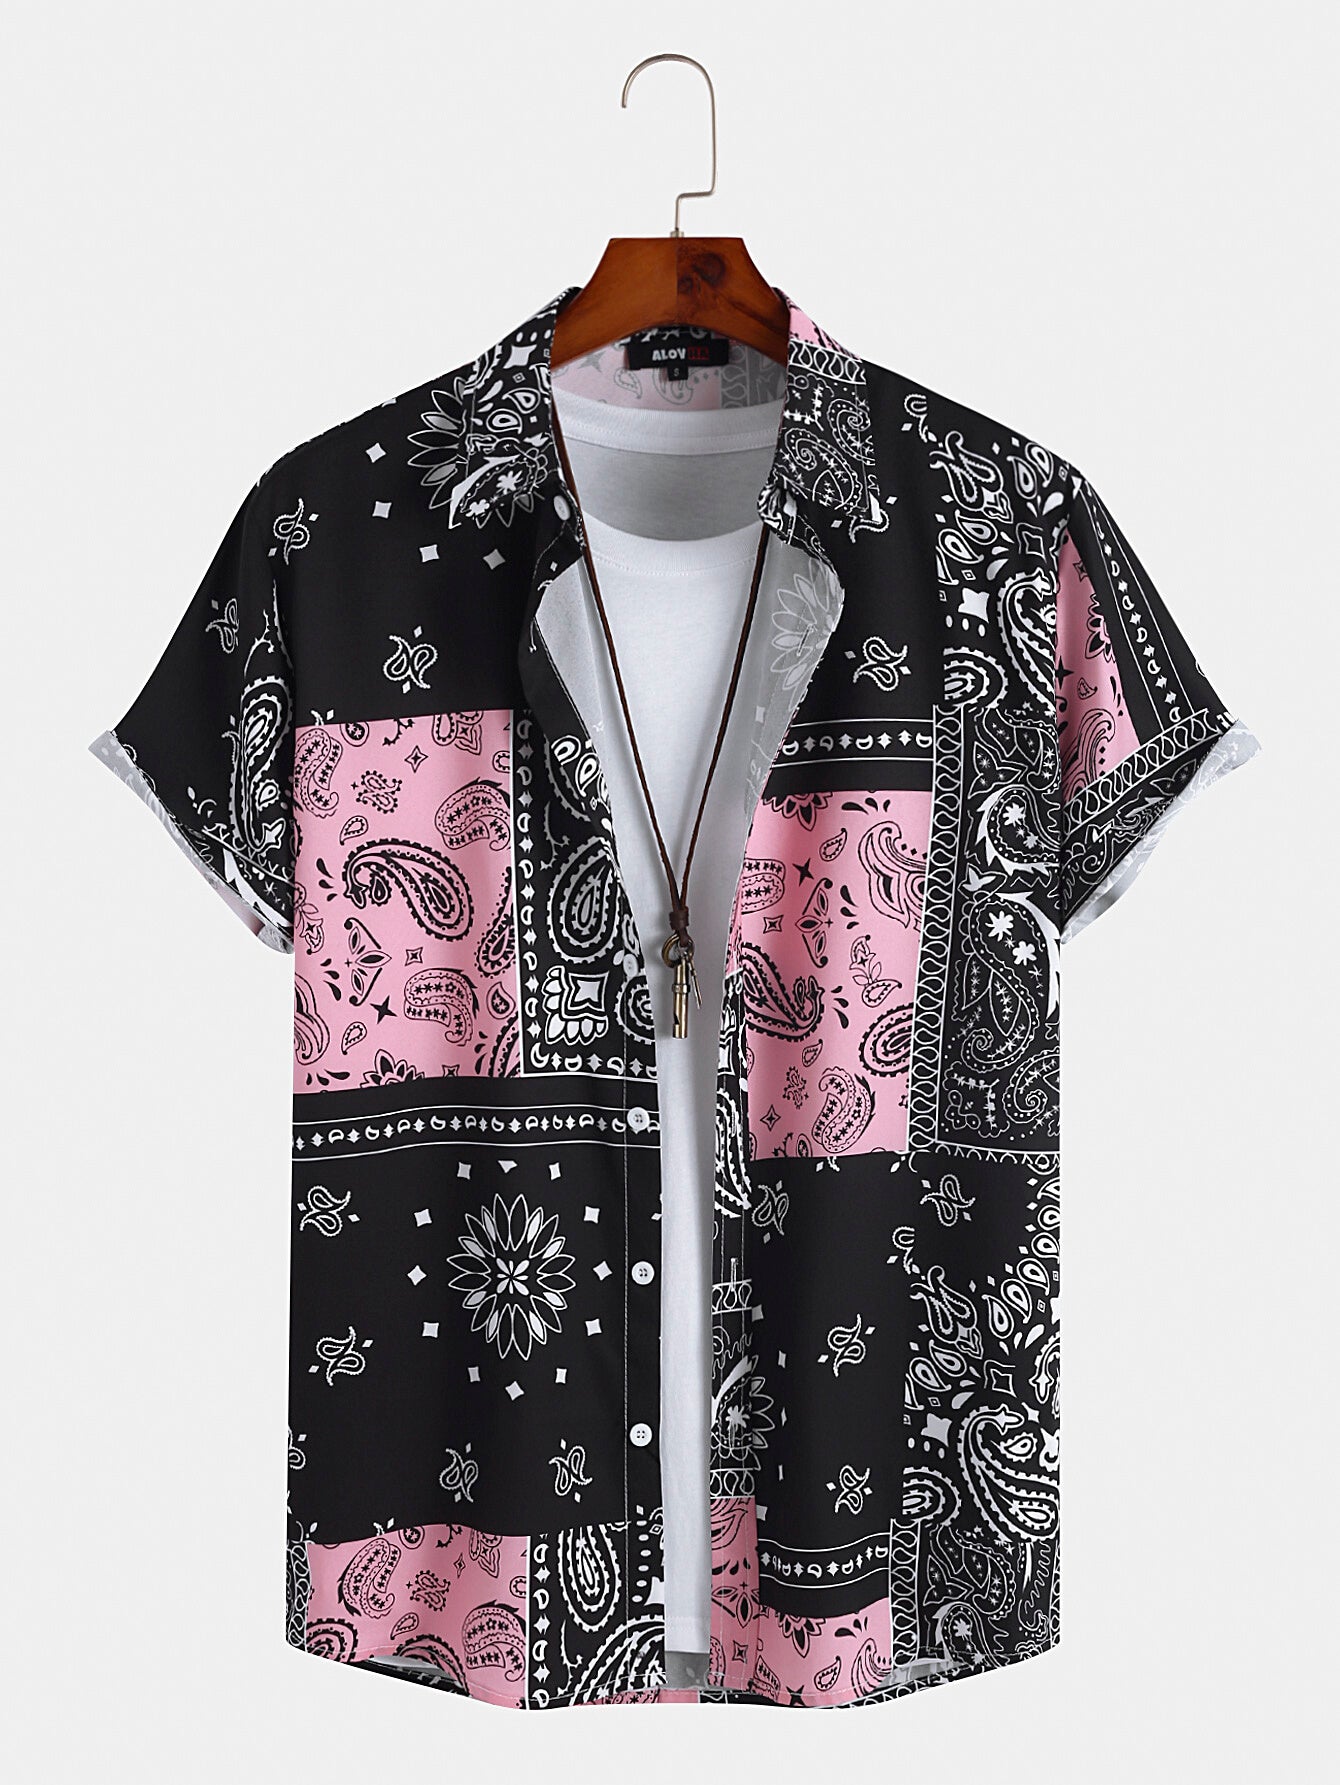 Camisa Masculina Paisley Floral Estampada Estilo Étnico Retrô Manga Curta Botão